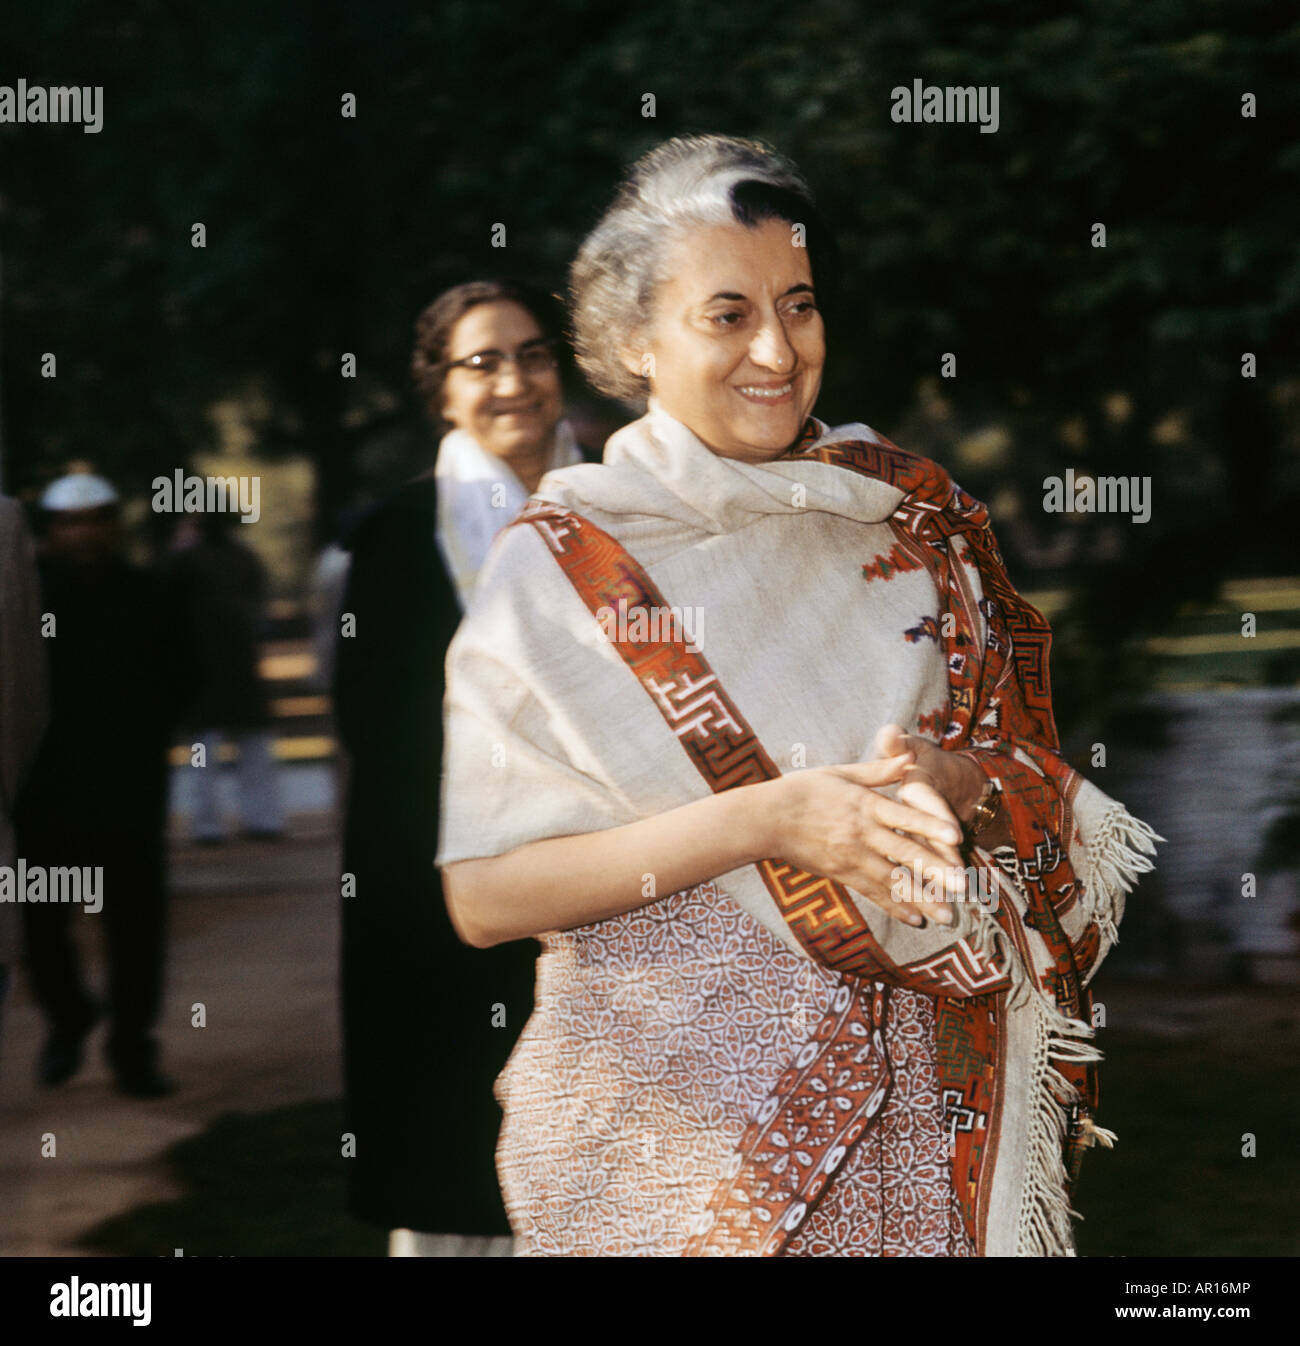 Indira-Gandhi,IndianP.M1966-1977 & 1980-1984.Only womanP.M.Daughter der Nehru.Defeated Pakistan 1971.Lst,re gewählt assasinate1984 Stockfoto